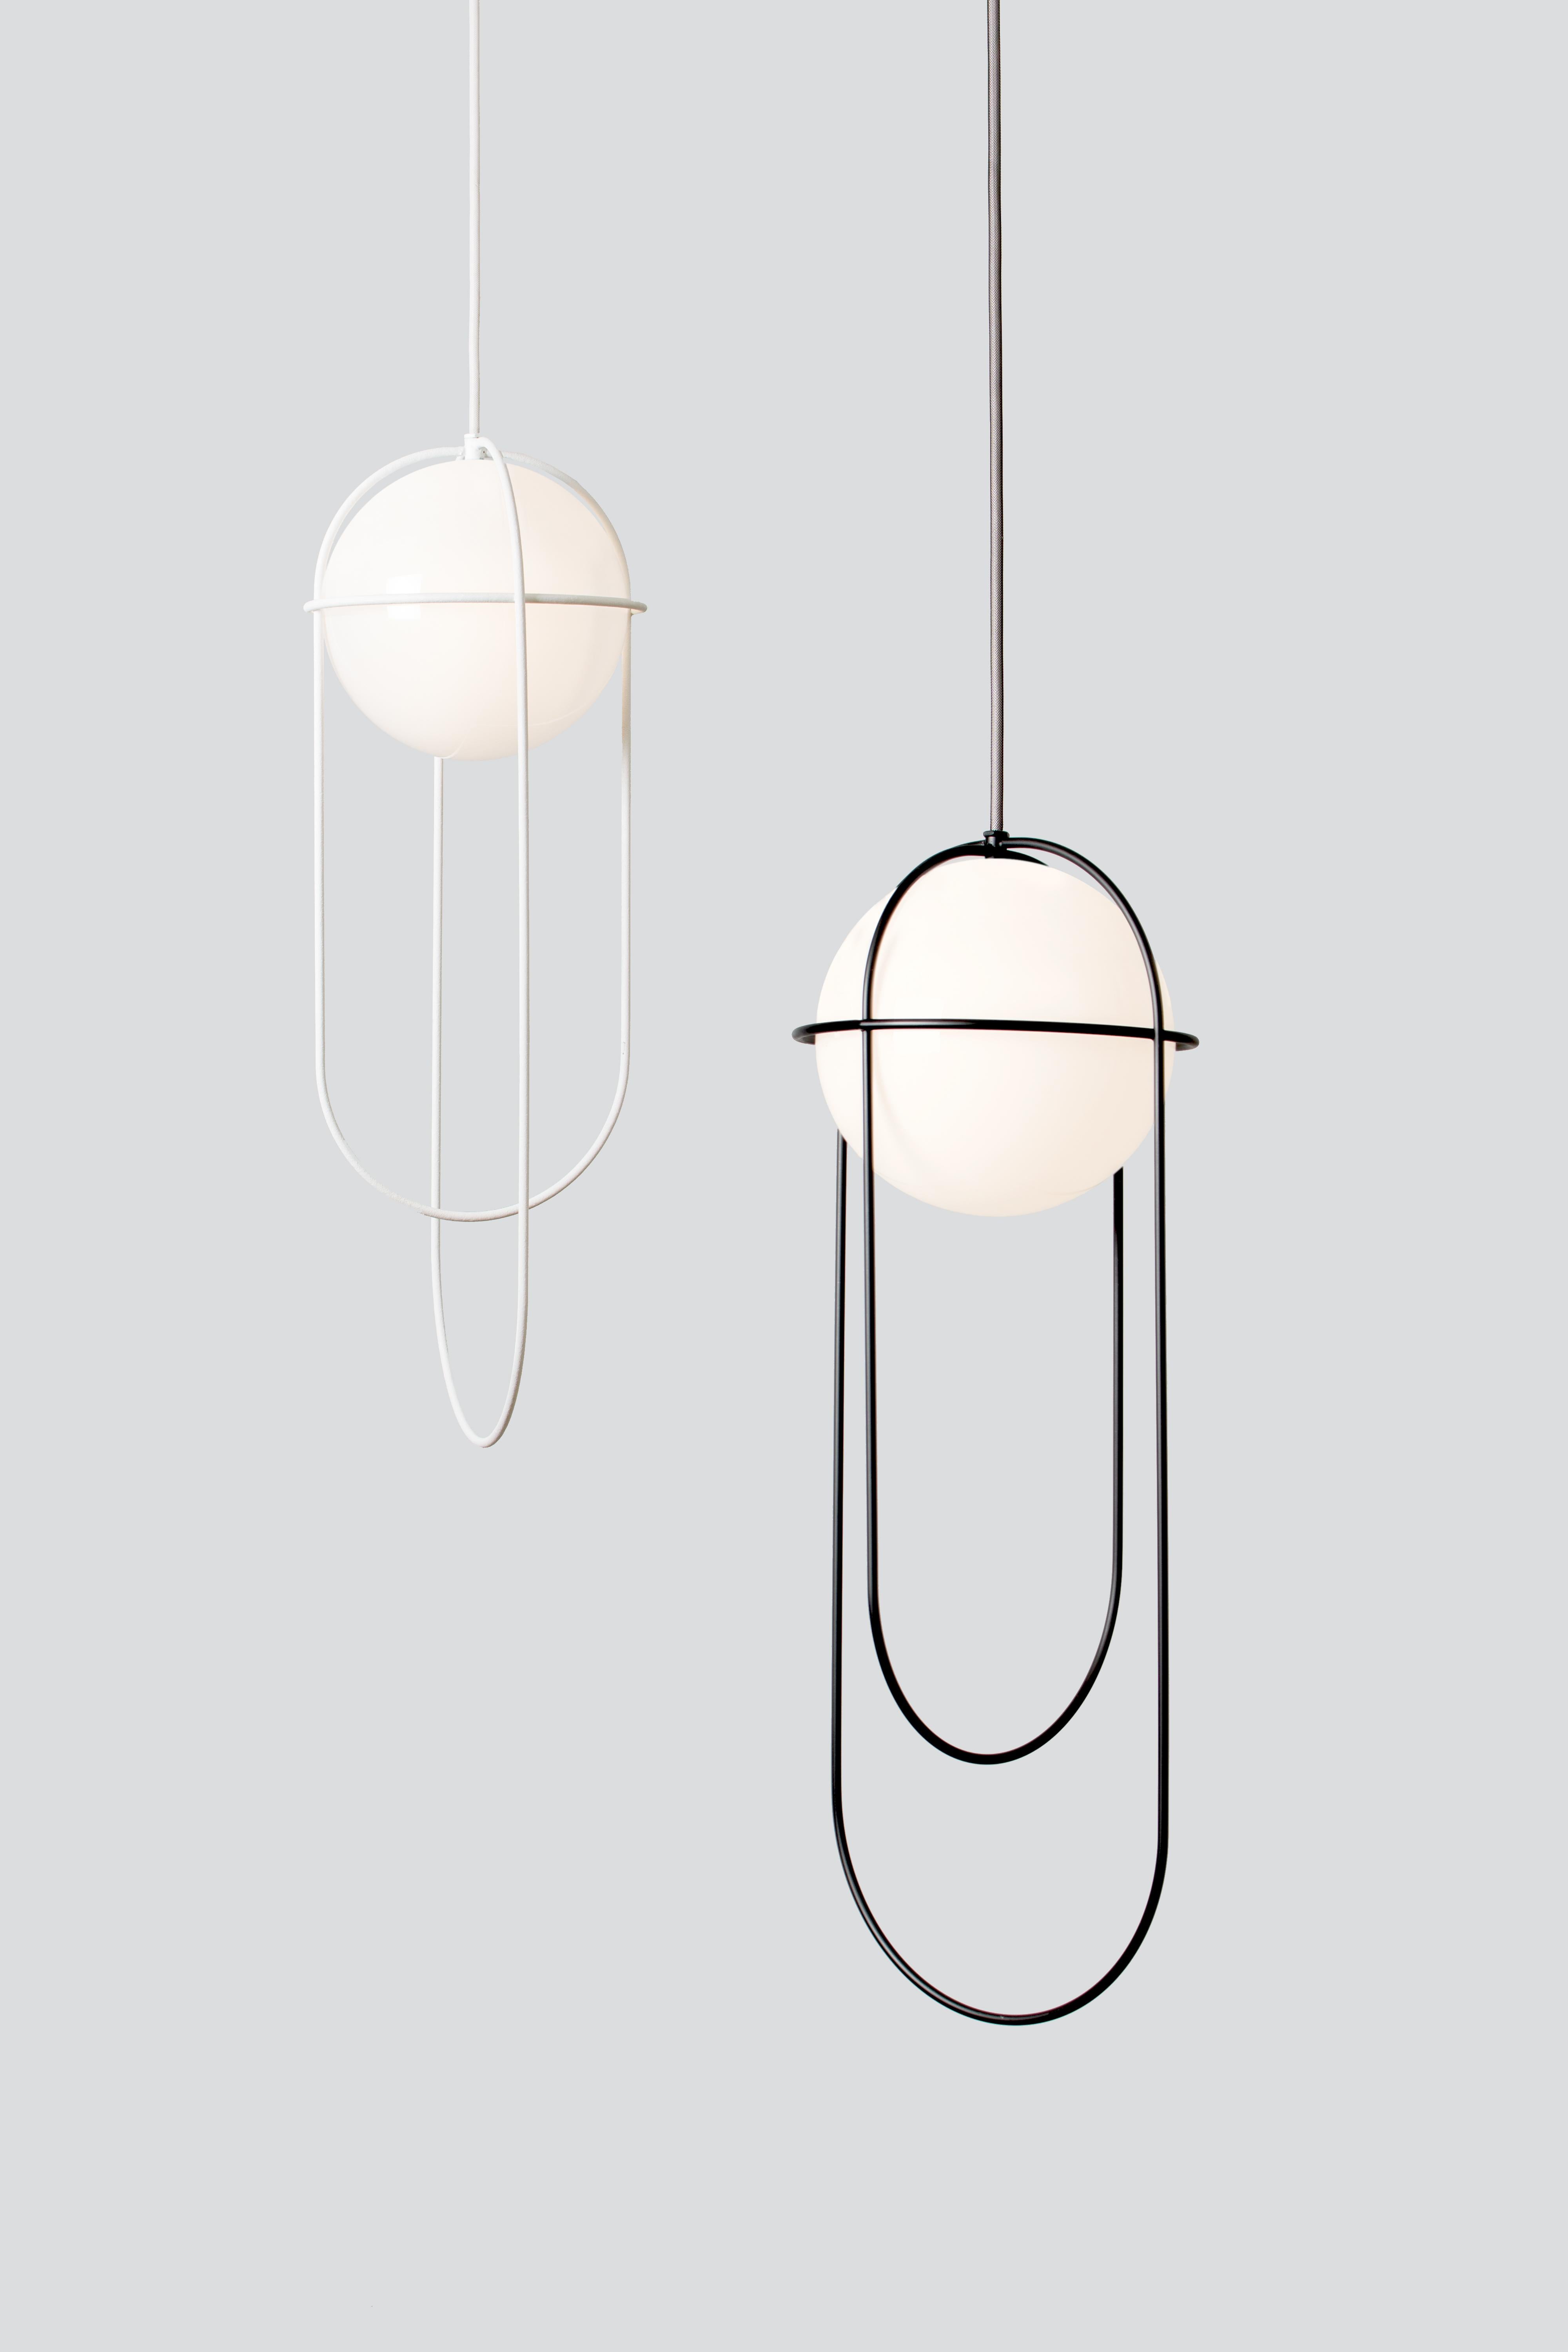 Lampe suspendue Orbit 2015
Design/One : Lukas Peet, éditeur : AND Light

MATERIALS
- Fil d'acier
- Globe en verre gravé

Dimensions
68,5 x 25cm / 27 